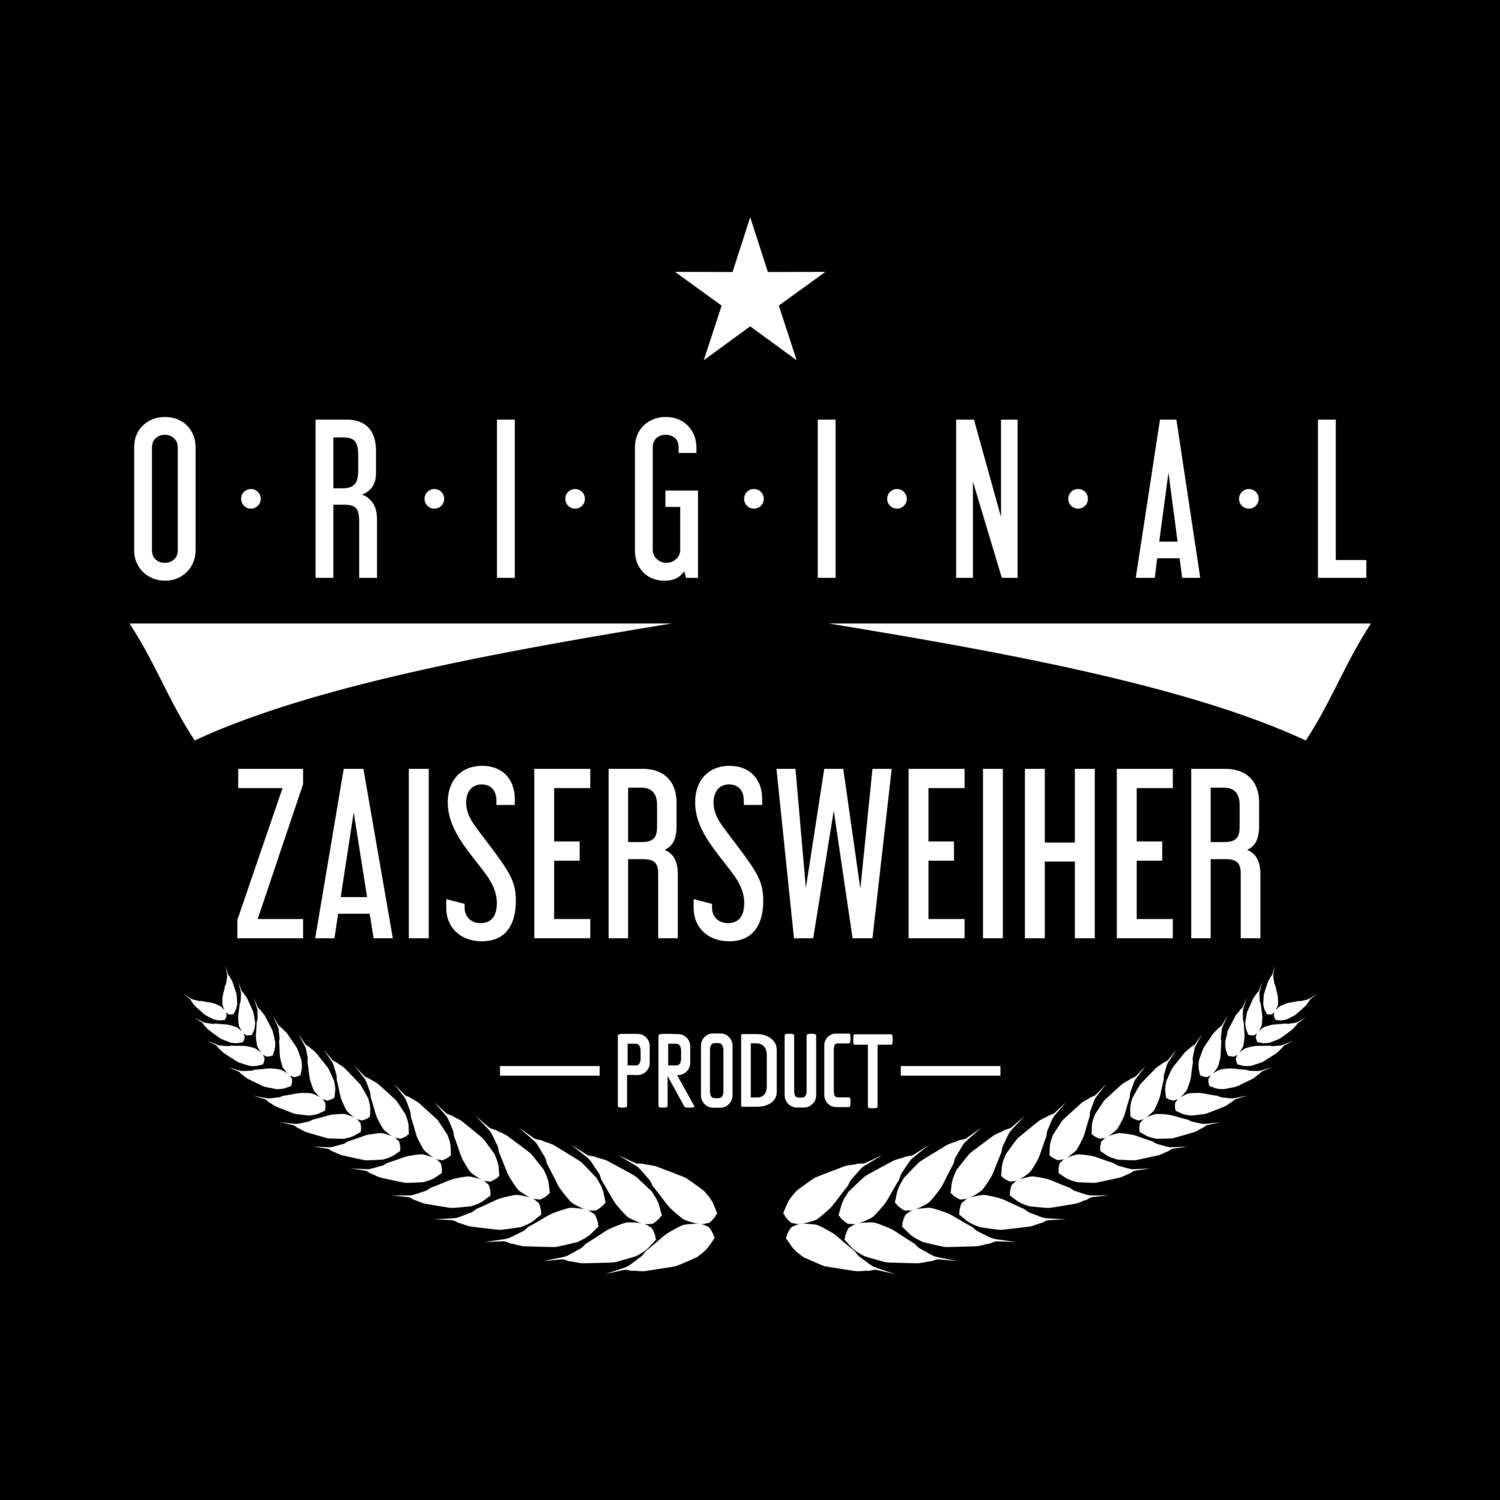 Zaisersweiher T-Shirt »Original Product«